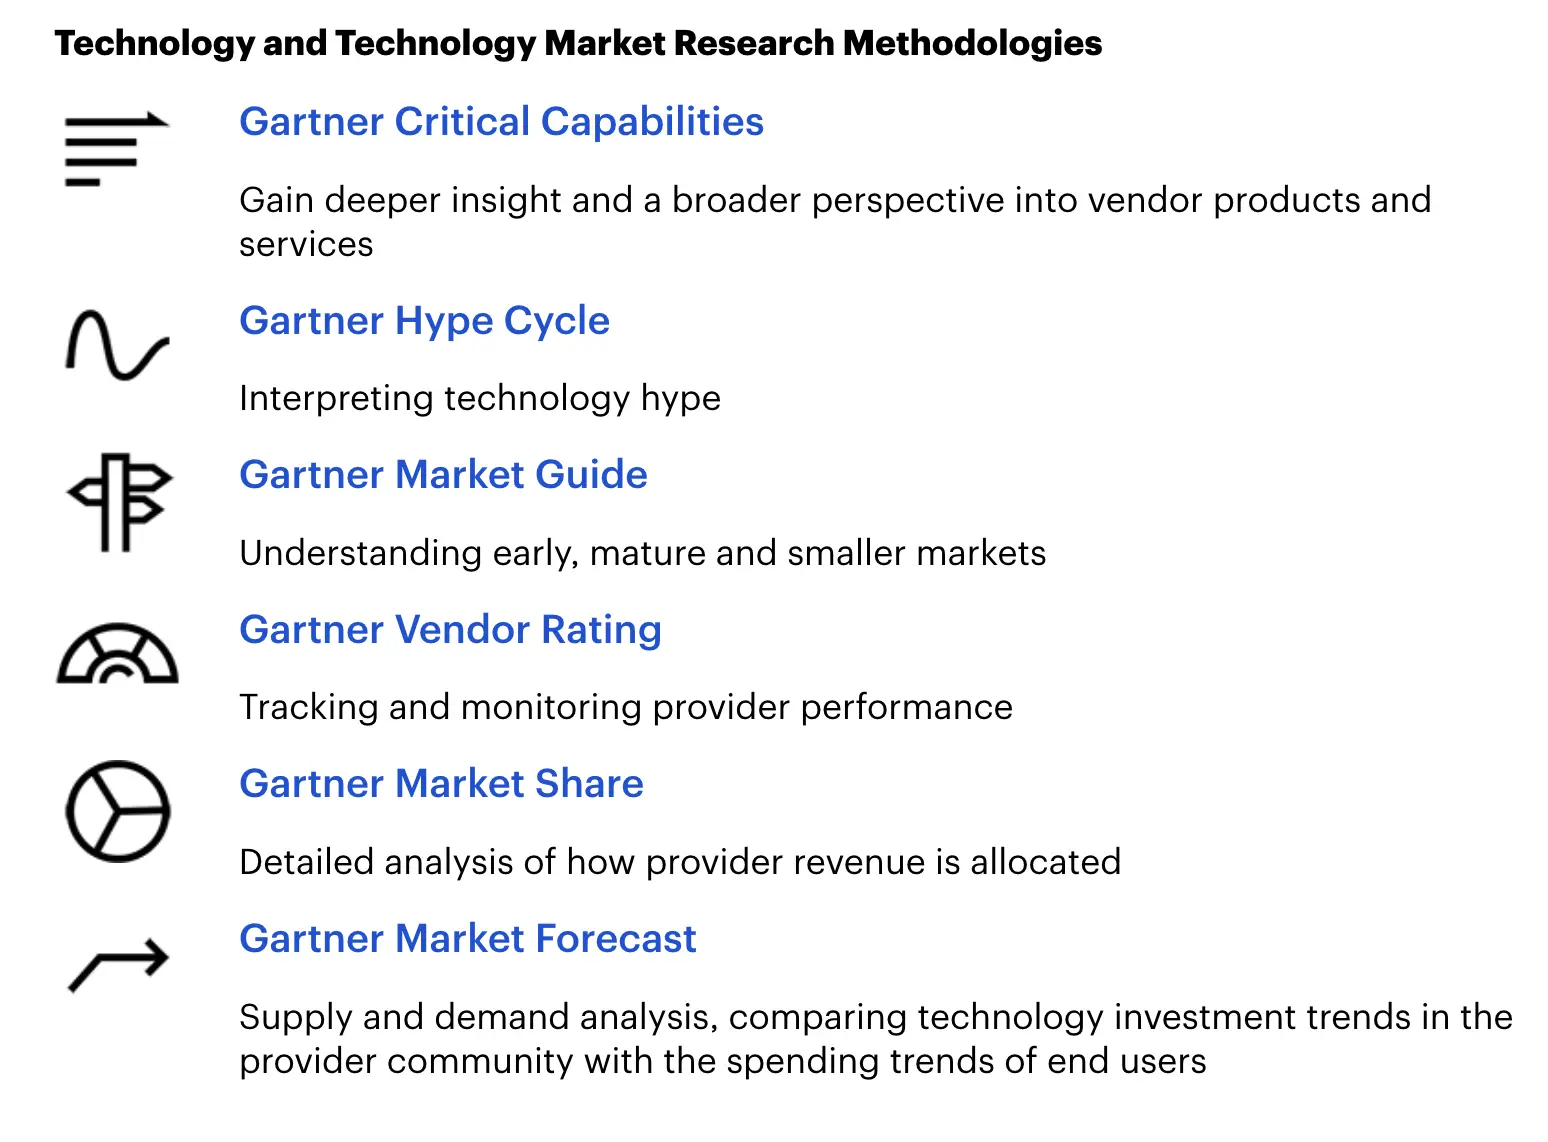 Gartner market research methodologies for data governance